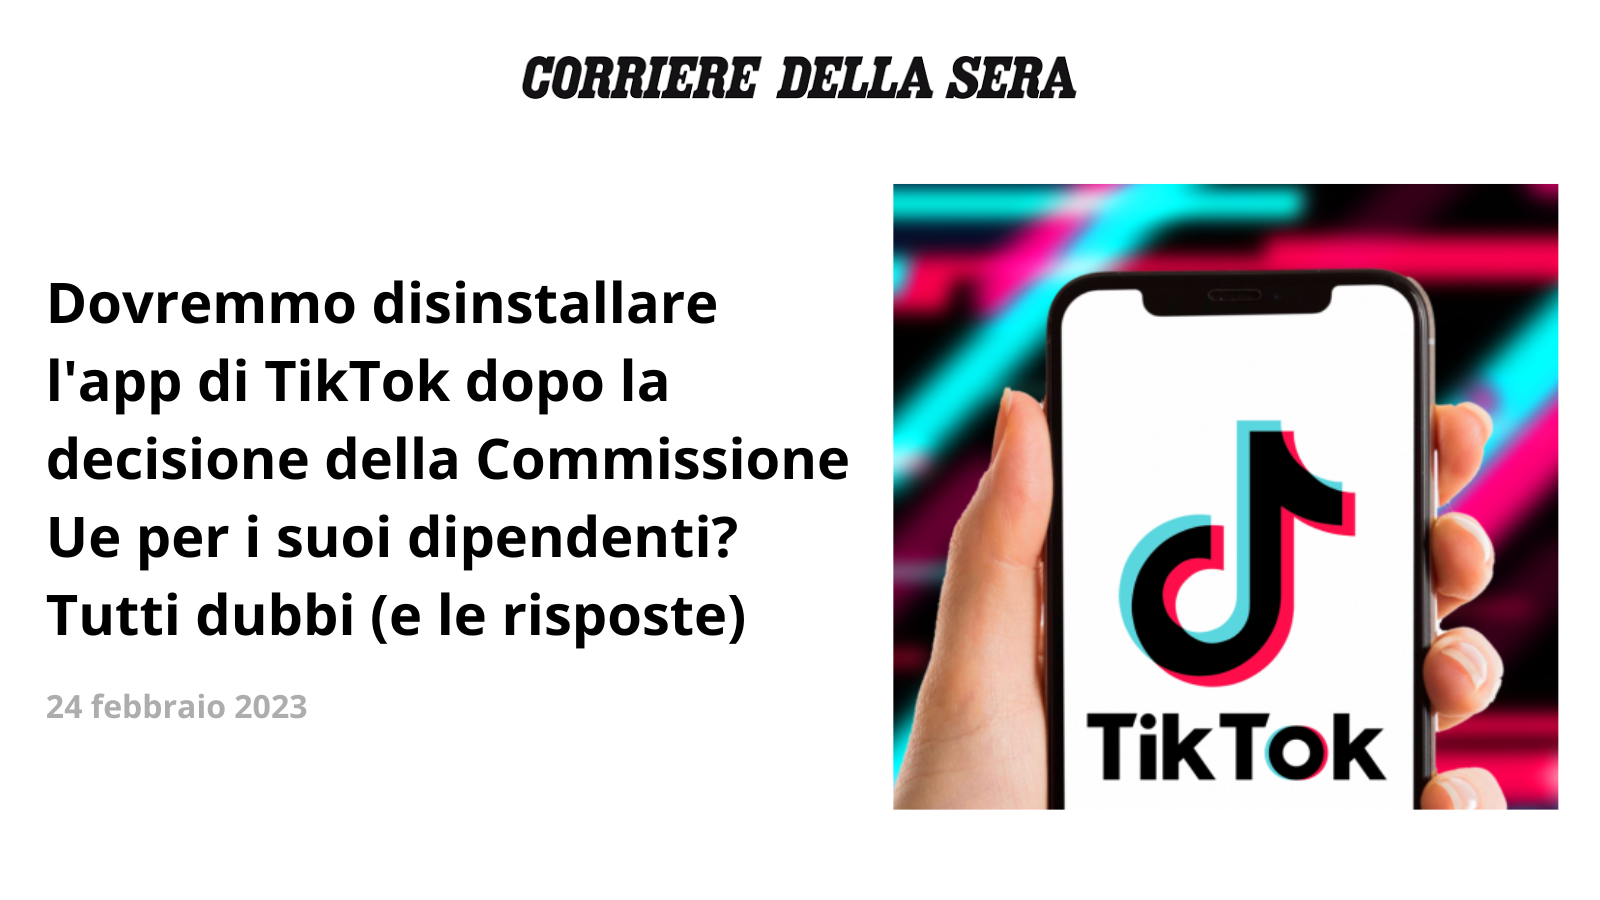 Sul Corriere della Sera, Dovremmo disinstallare l’app di TikTok dopo la decisione della Commissione Ue per i suoi dipendenti? Tutti dubbi (e le risposte)